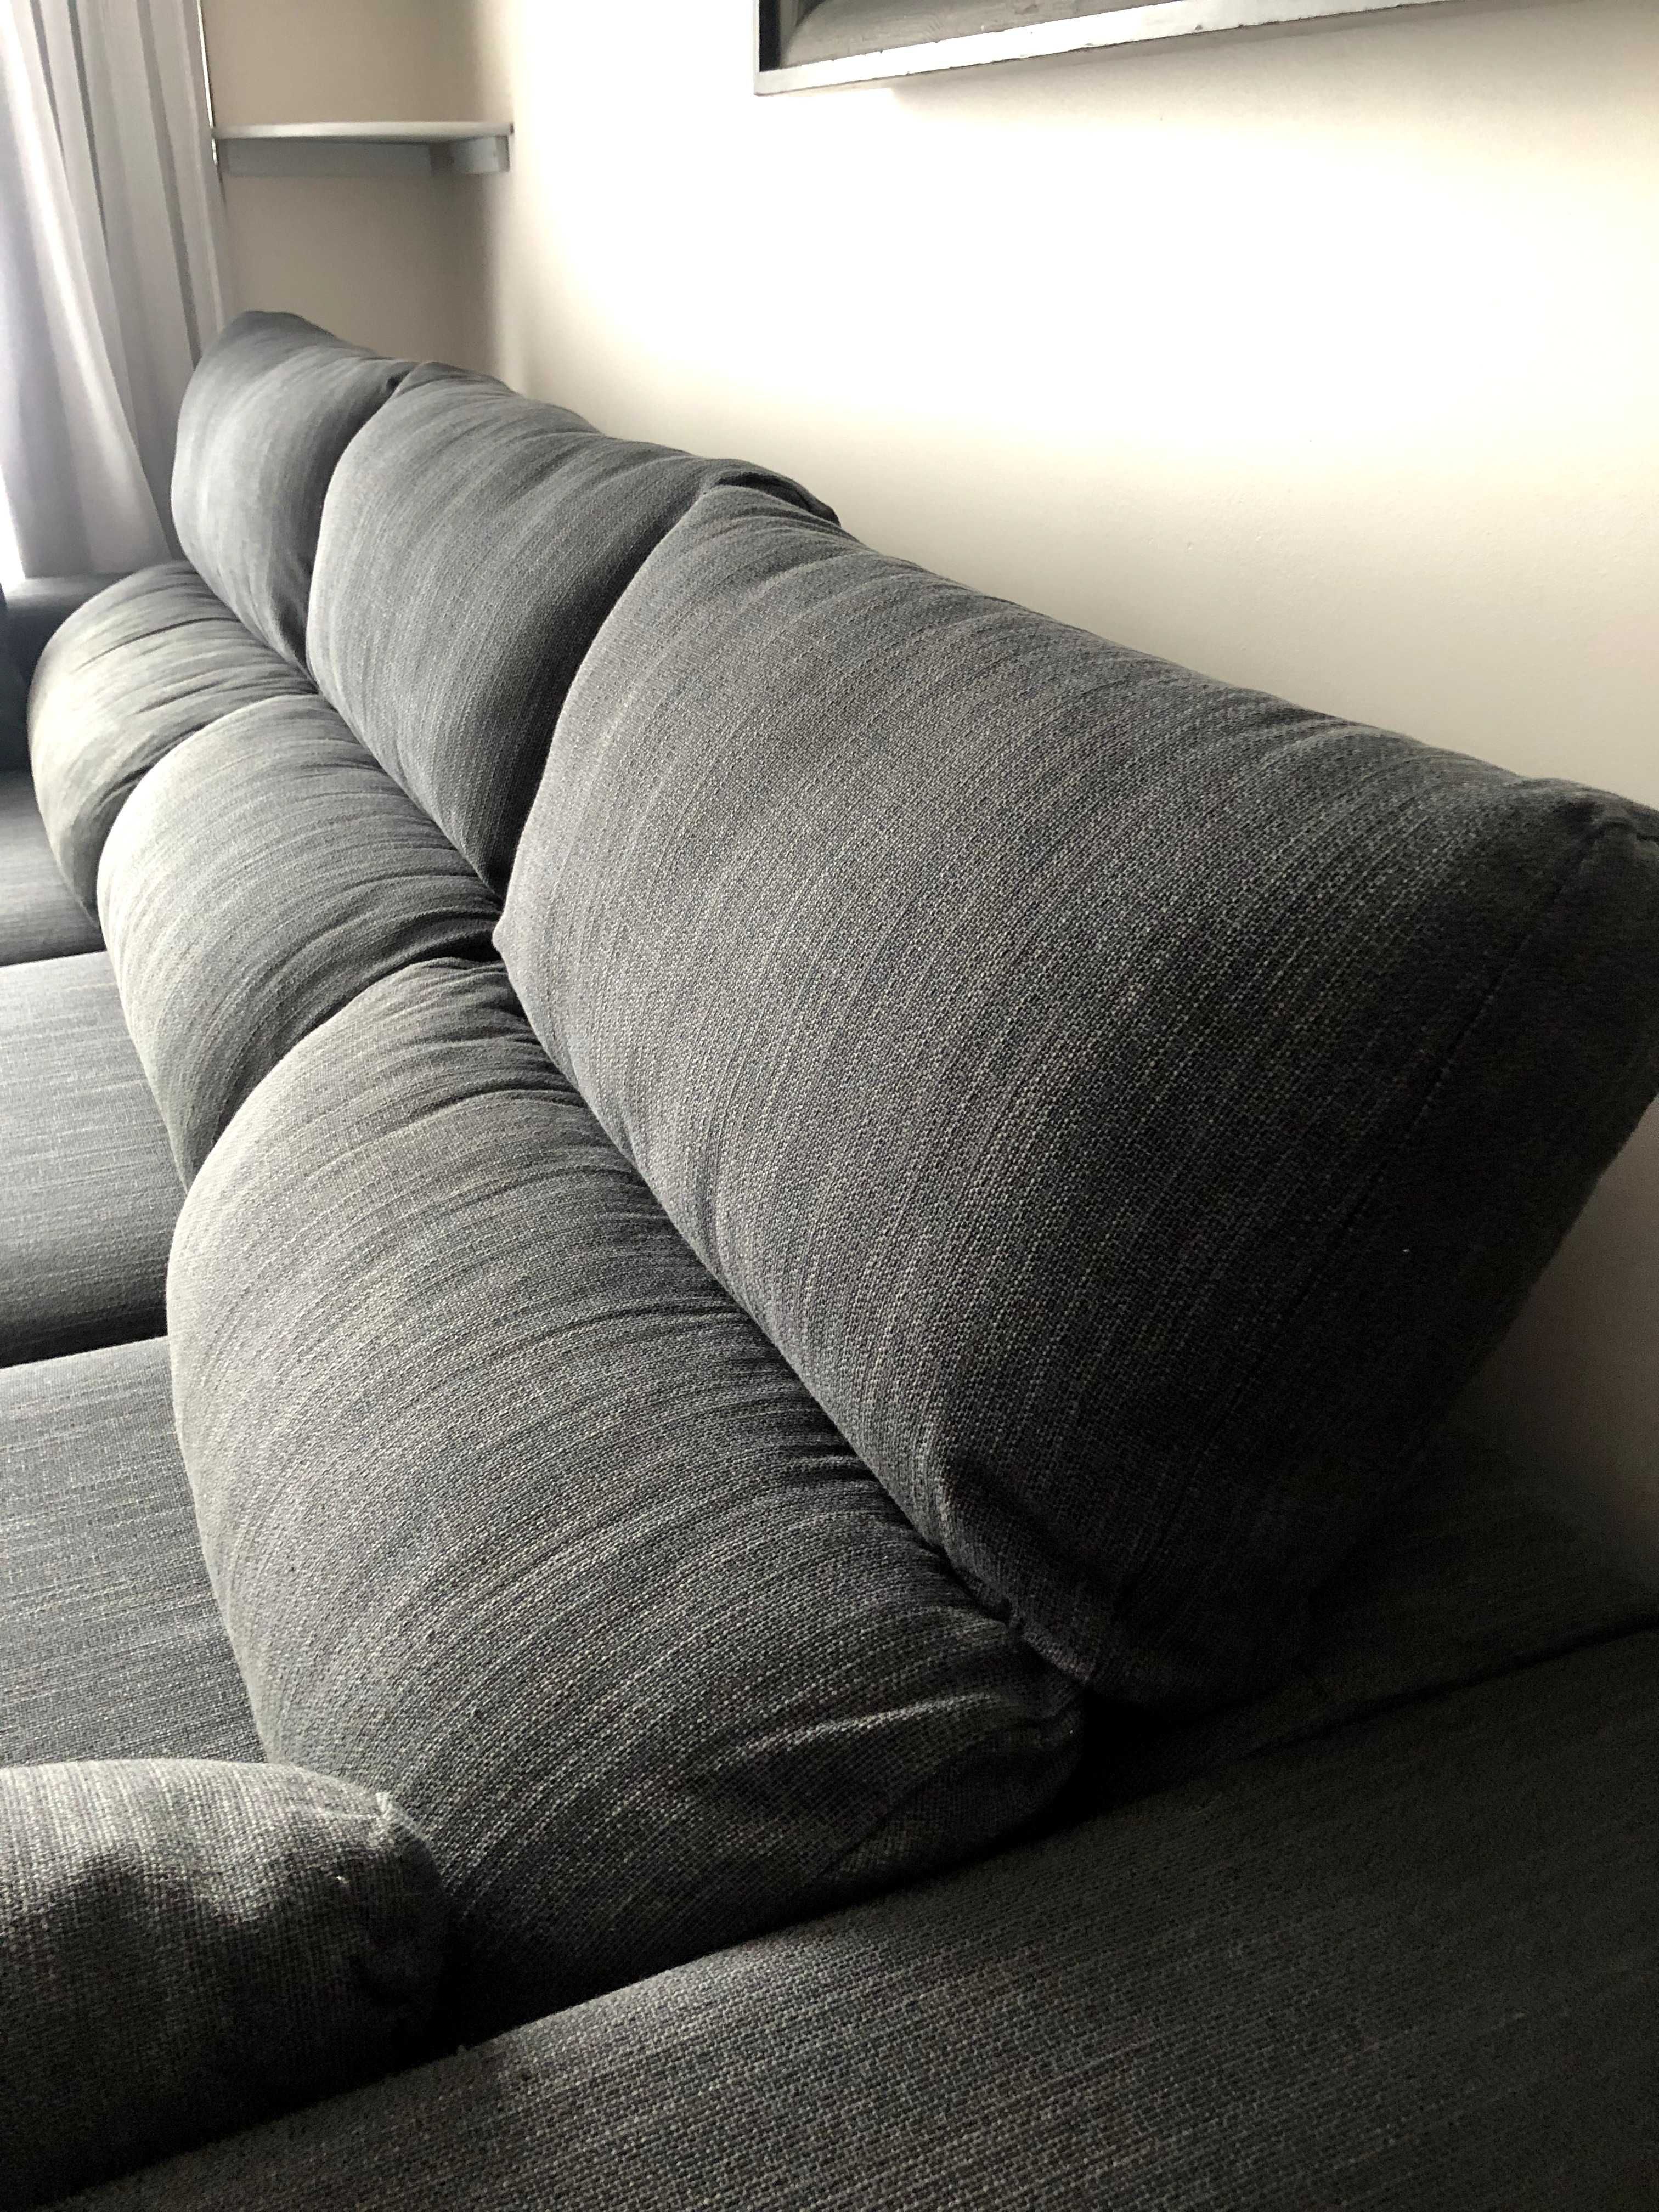 Sofa 3-osobowa z szezlongiem Ikea ESKILSTUNA